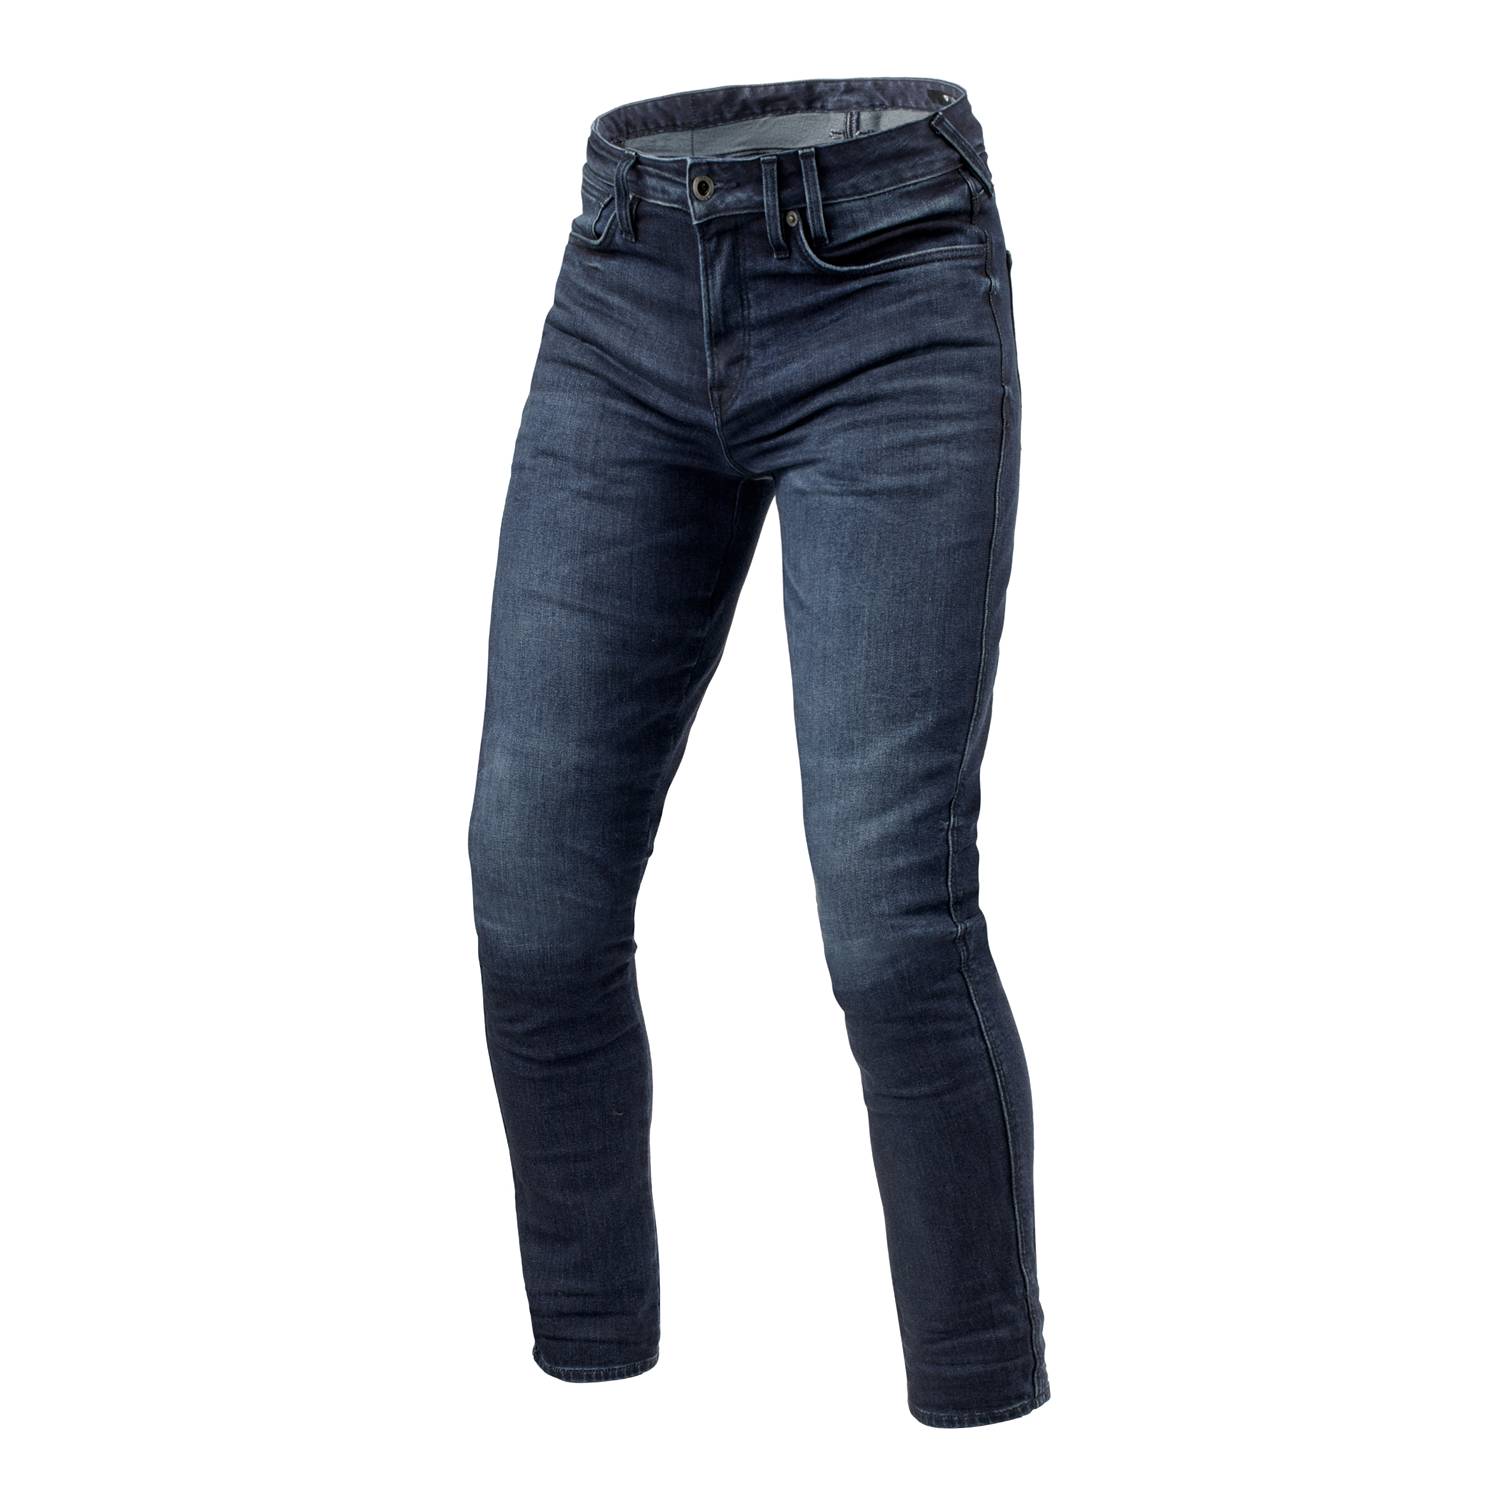 Image of REV'IT! Jeans Carlin SK Dark Blue Used L34 Motorcycle Jeans Size L34/W30 EN